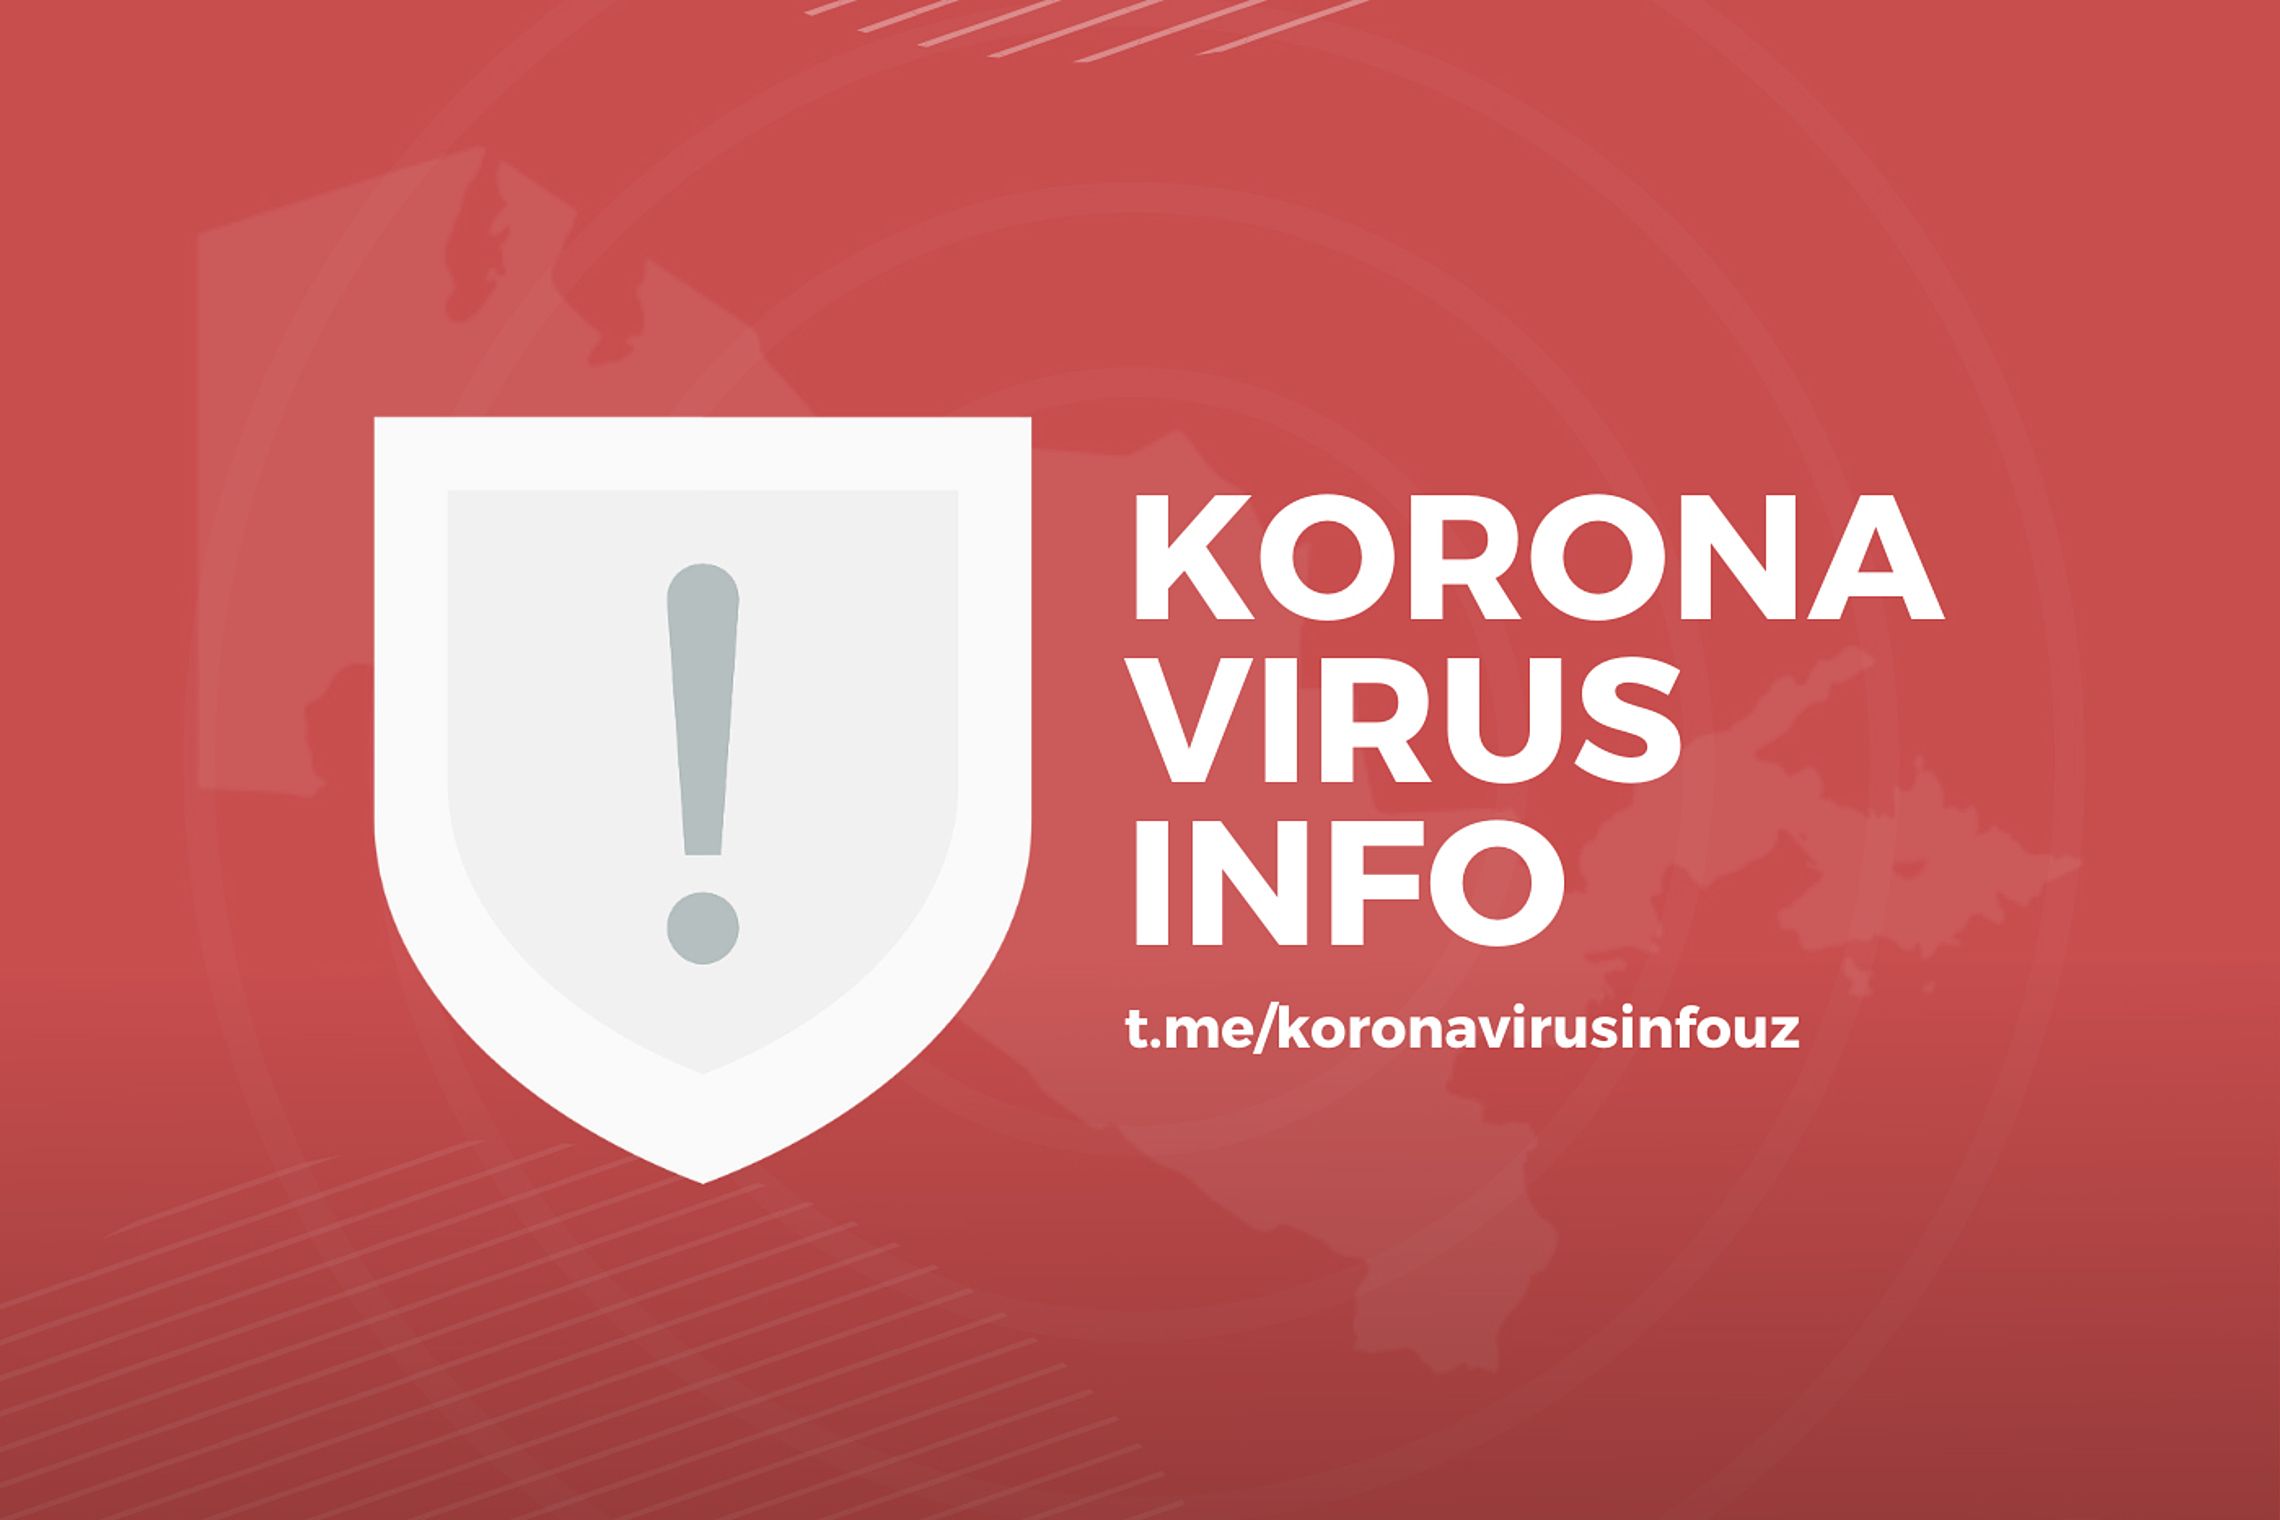 Koronavirus info rasmiy kanali ish boshladi